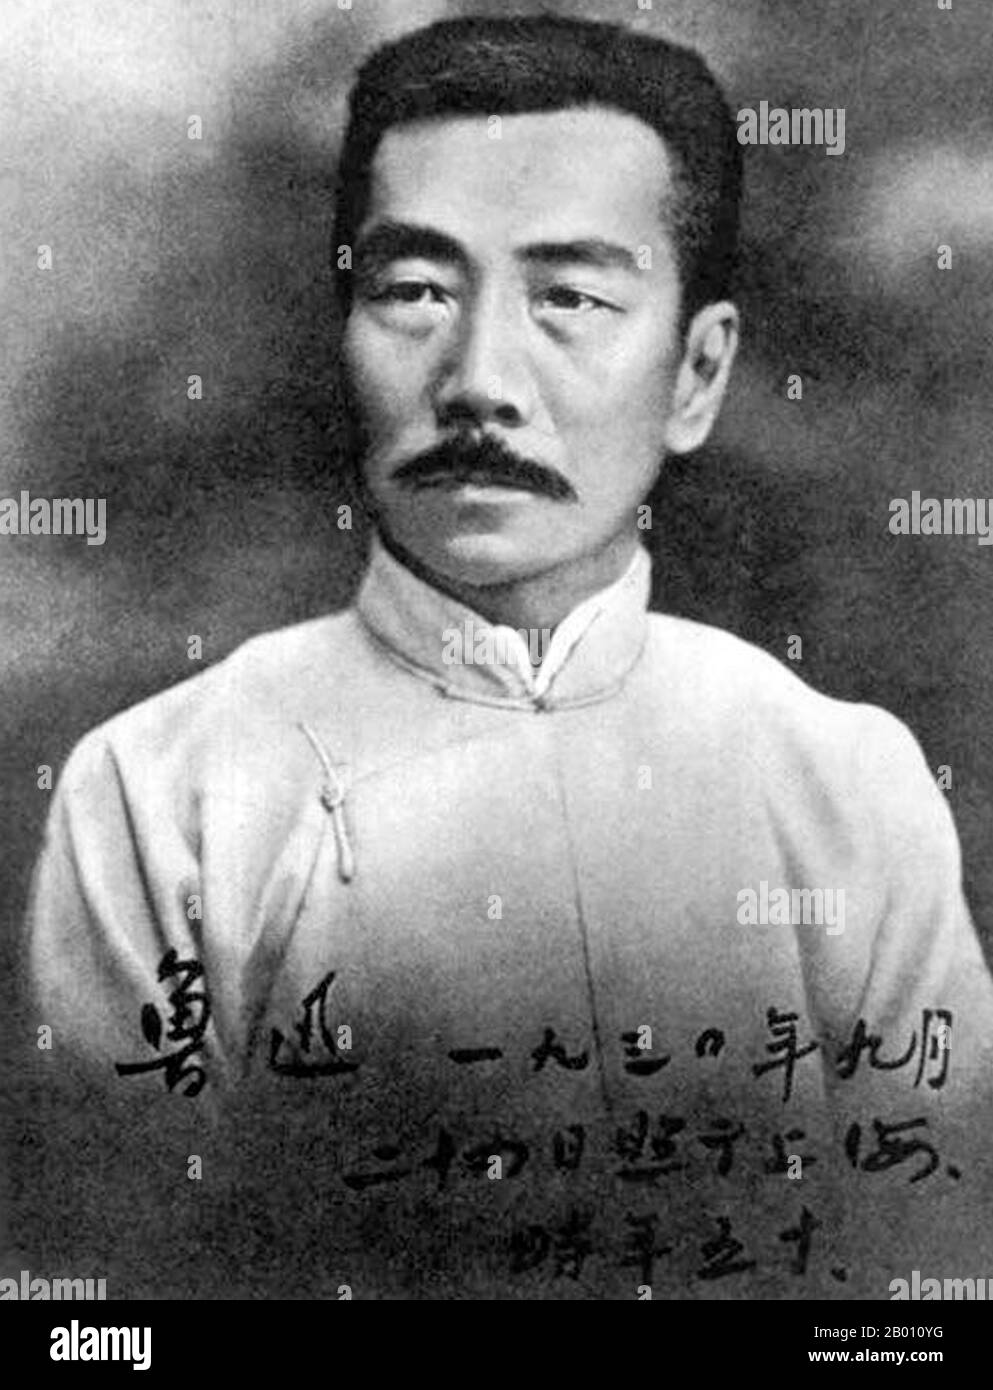 Cina: Lo scrittore cinese Lu Xun (1881-1936), 20 ° secolo. Lu Xun (o Lu Hsun), è stato il nome di Zhou Shuren (Chou Shu-jen), dal 25 settembre 1881 al 19 ottobre 1936. Uno dei maggiori scrittori cinesi del 20 ° secolo. Considerato da molti il fondatore della letteratura cinese moderna, scrisse in baihua (il vernacolare) così come in cinese classico. Lu Xun è stato uno scrittore, redattore, traduttore, critico, saggista e poeta. Negli anni trenta divenne il capo titolare della Lega Cinese degli scrittori della sinistra a Shanghai. Foto Stock